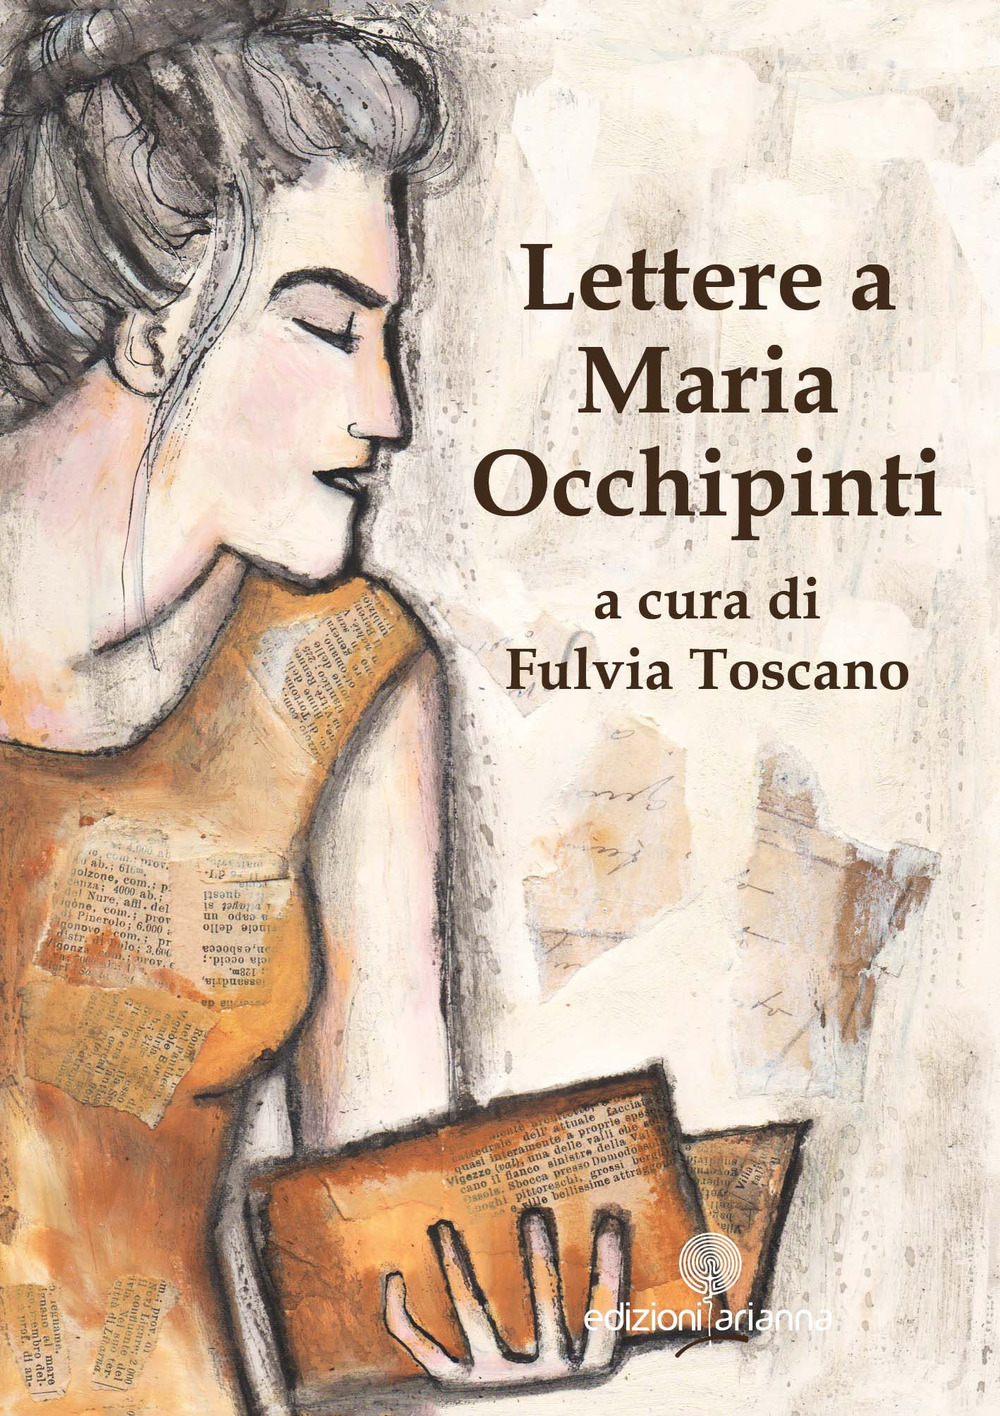 Lettere a Maria Occhipinti